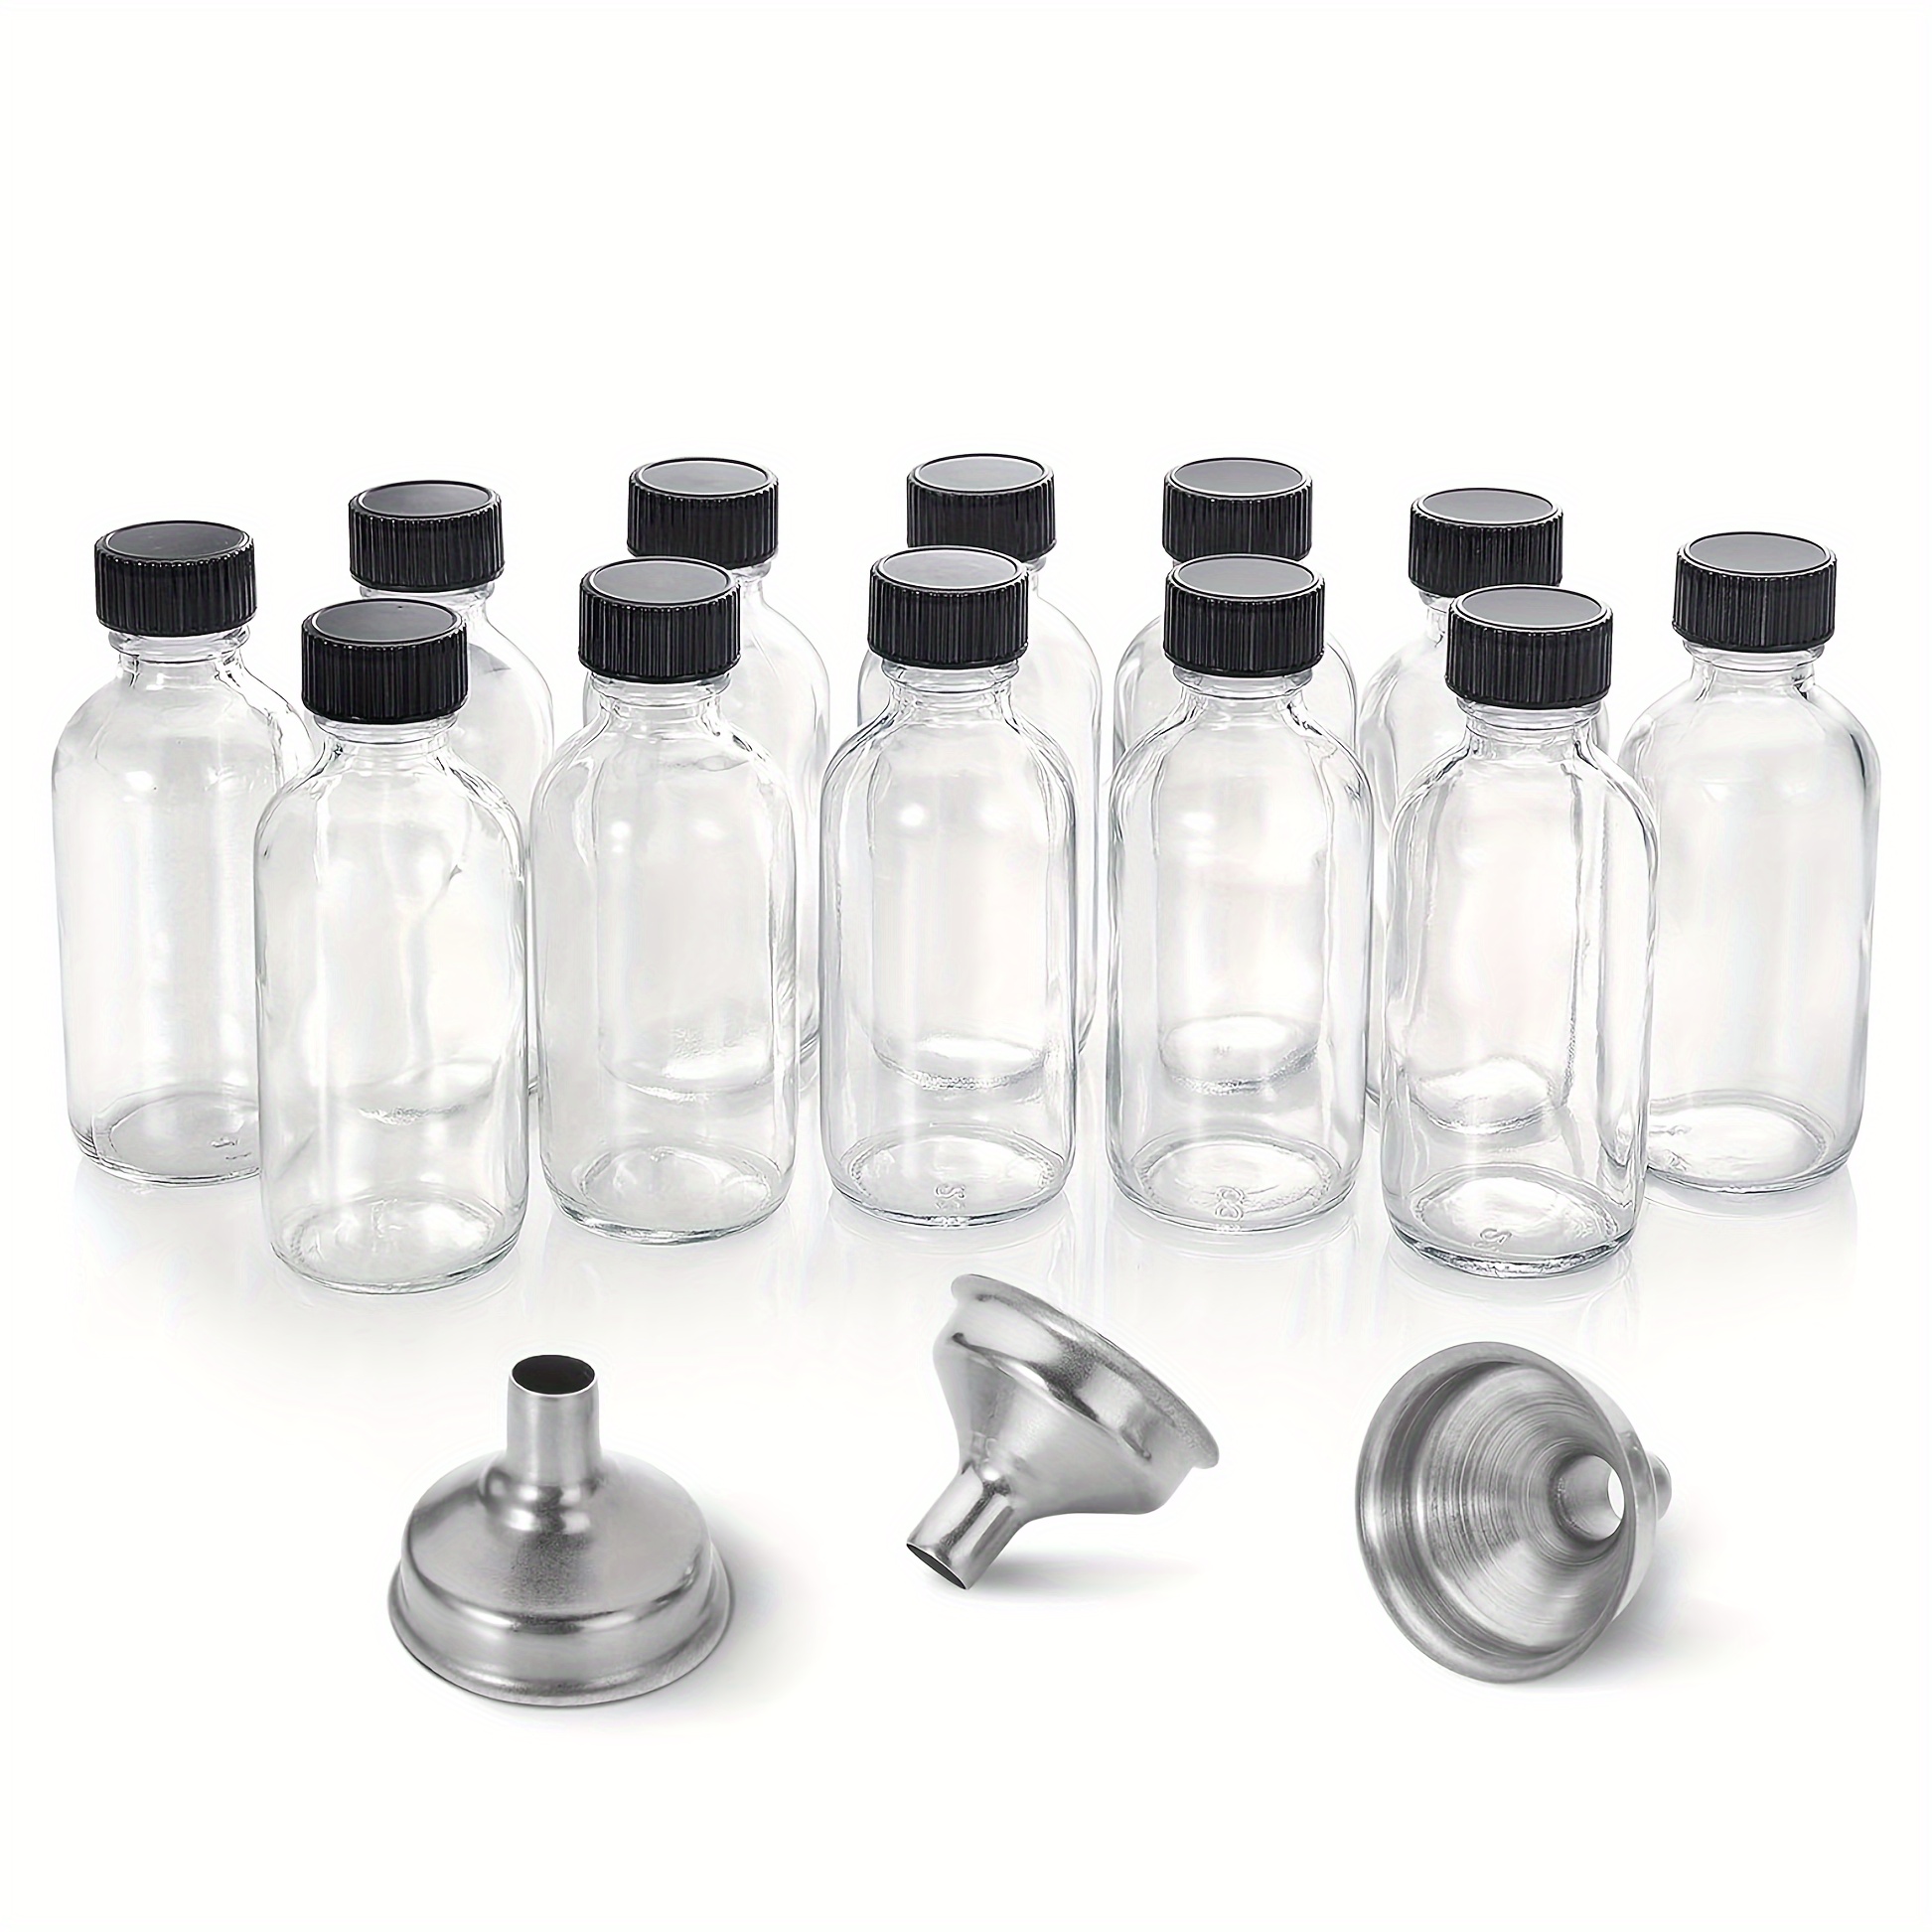  Suwimut Paquete de 16 botellas de vidrio para beber, botellas  de agua reutilizables de boca ancha de 16 onzas con tapas herméticas de  plástico para jugos, batidos, té, botellas de leche